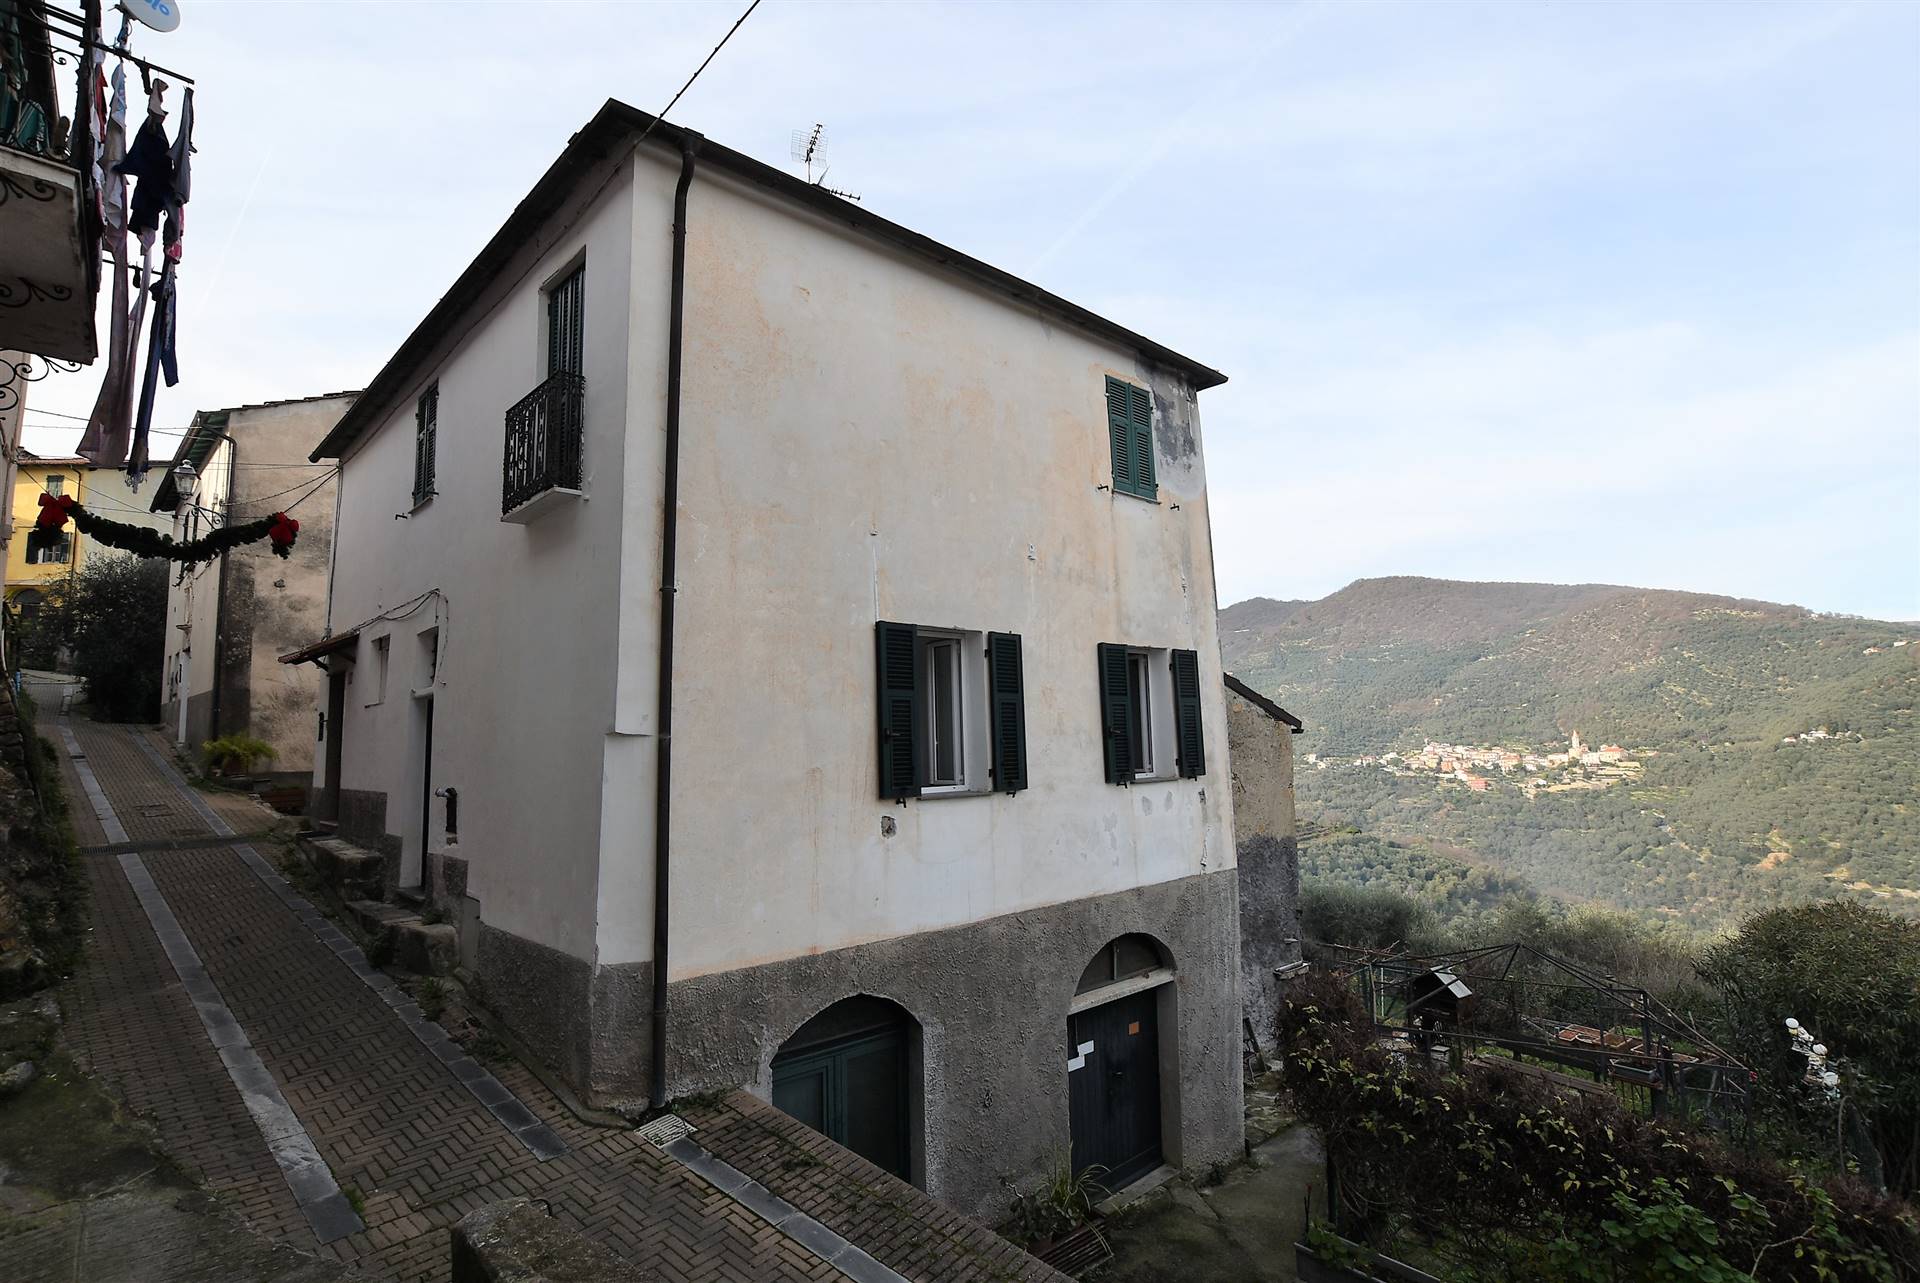 A Bestagno, frazione del Comune di Pontedassio, proponiamo in vendita in esclusiva abitazione edificata su due livelli con doppio ingresso, composta 